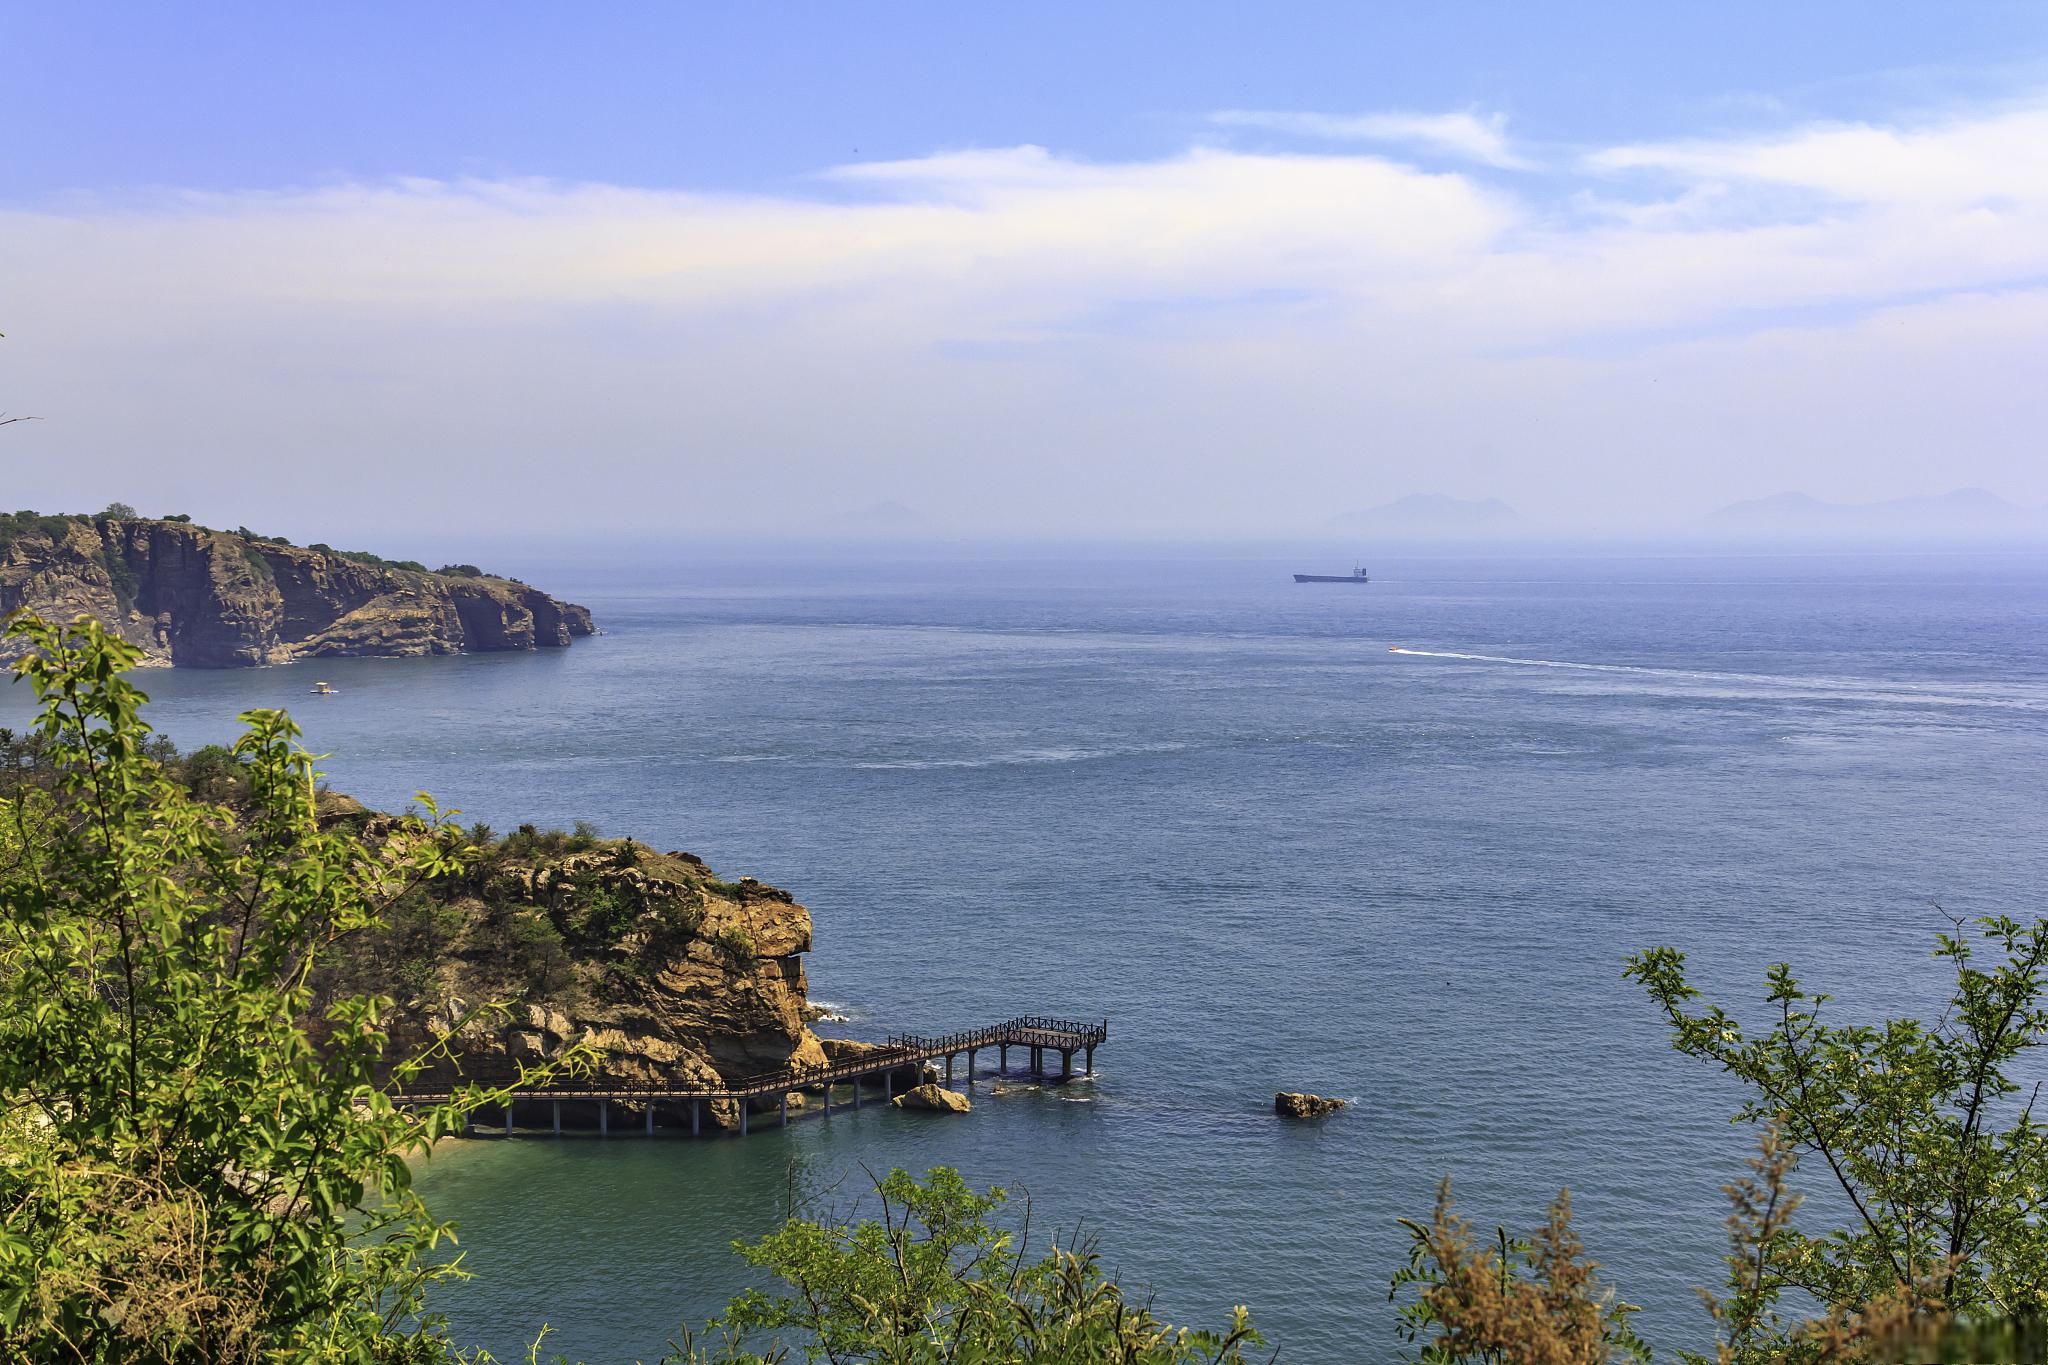 棒棰岛旅游攻略 棒棰岛是位于中国辽宁省大连市的一个海滨度假胜地,以